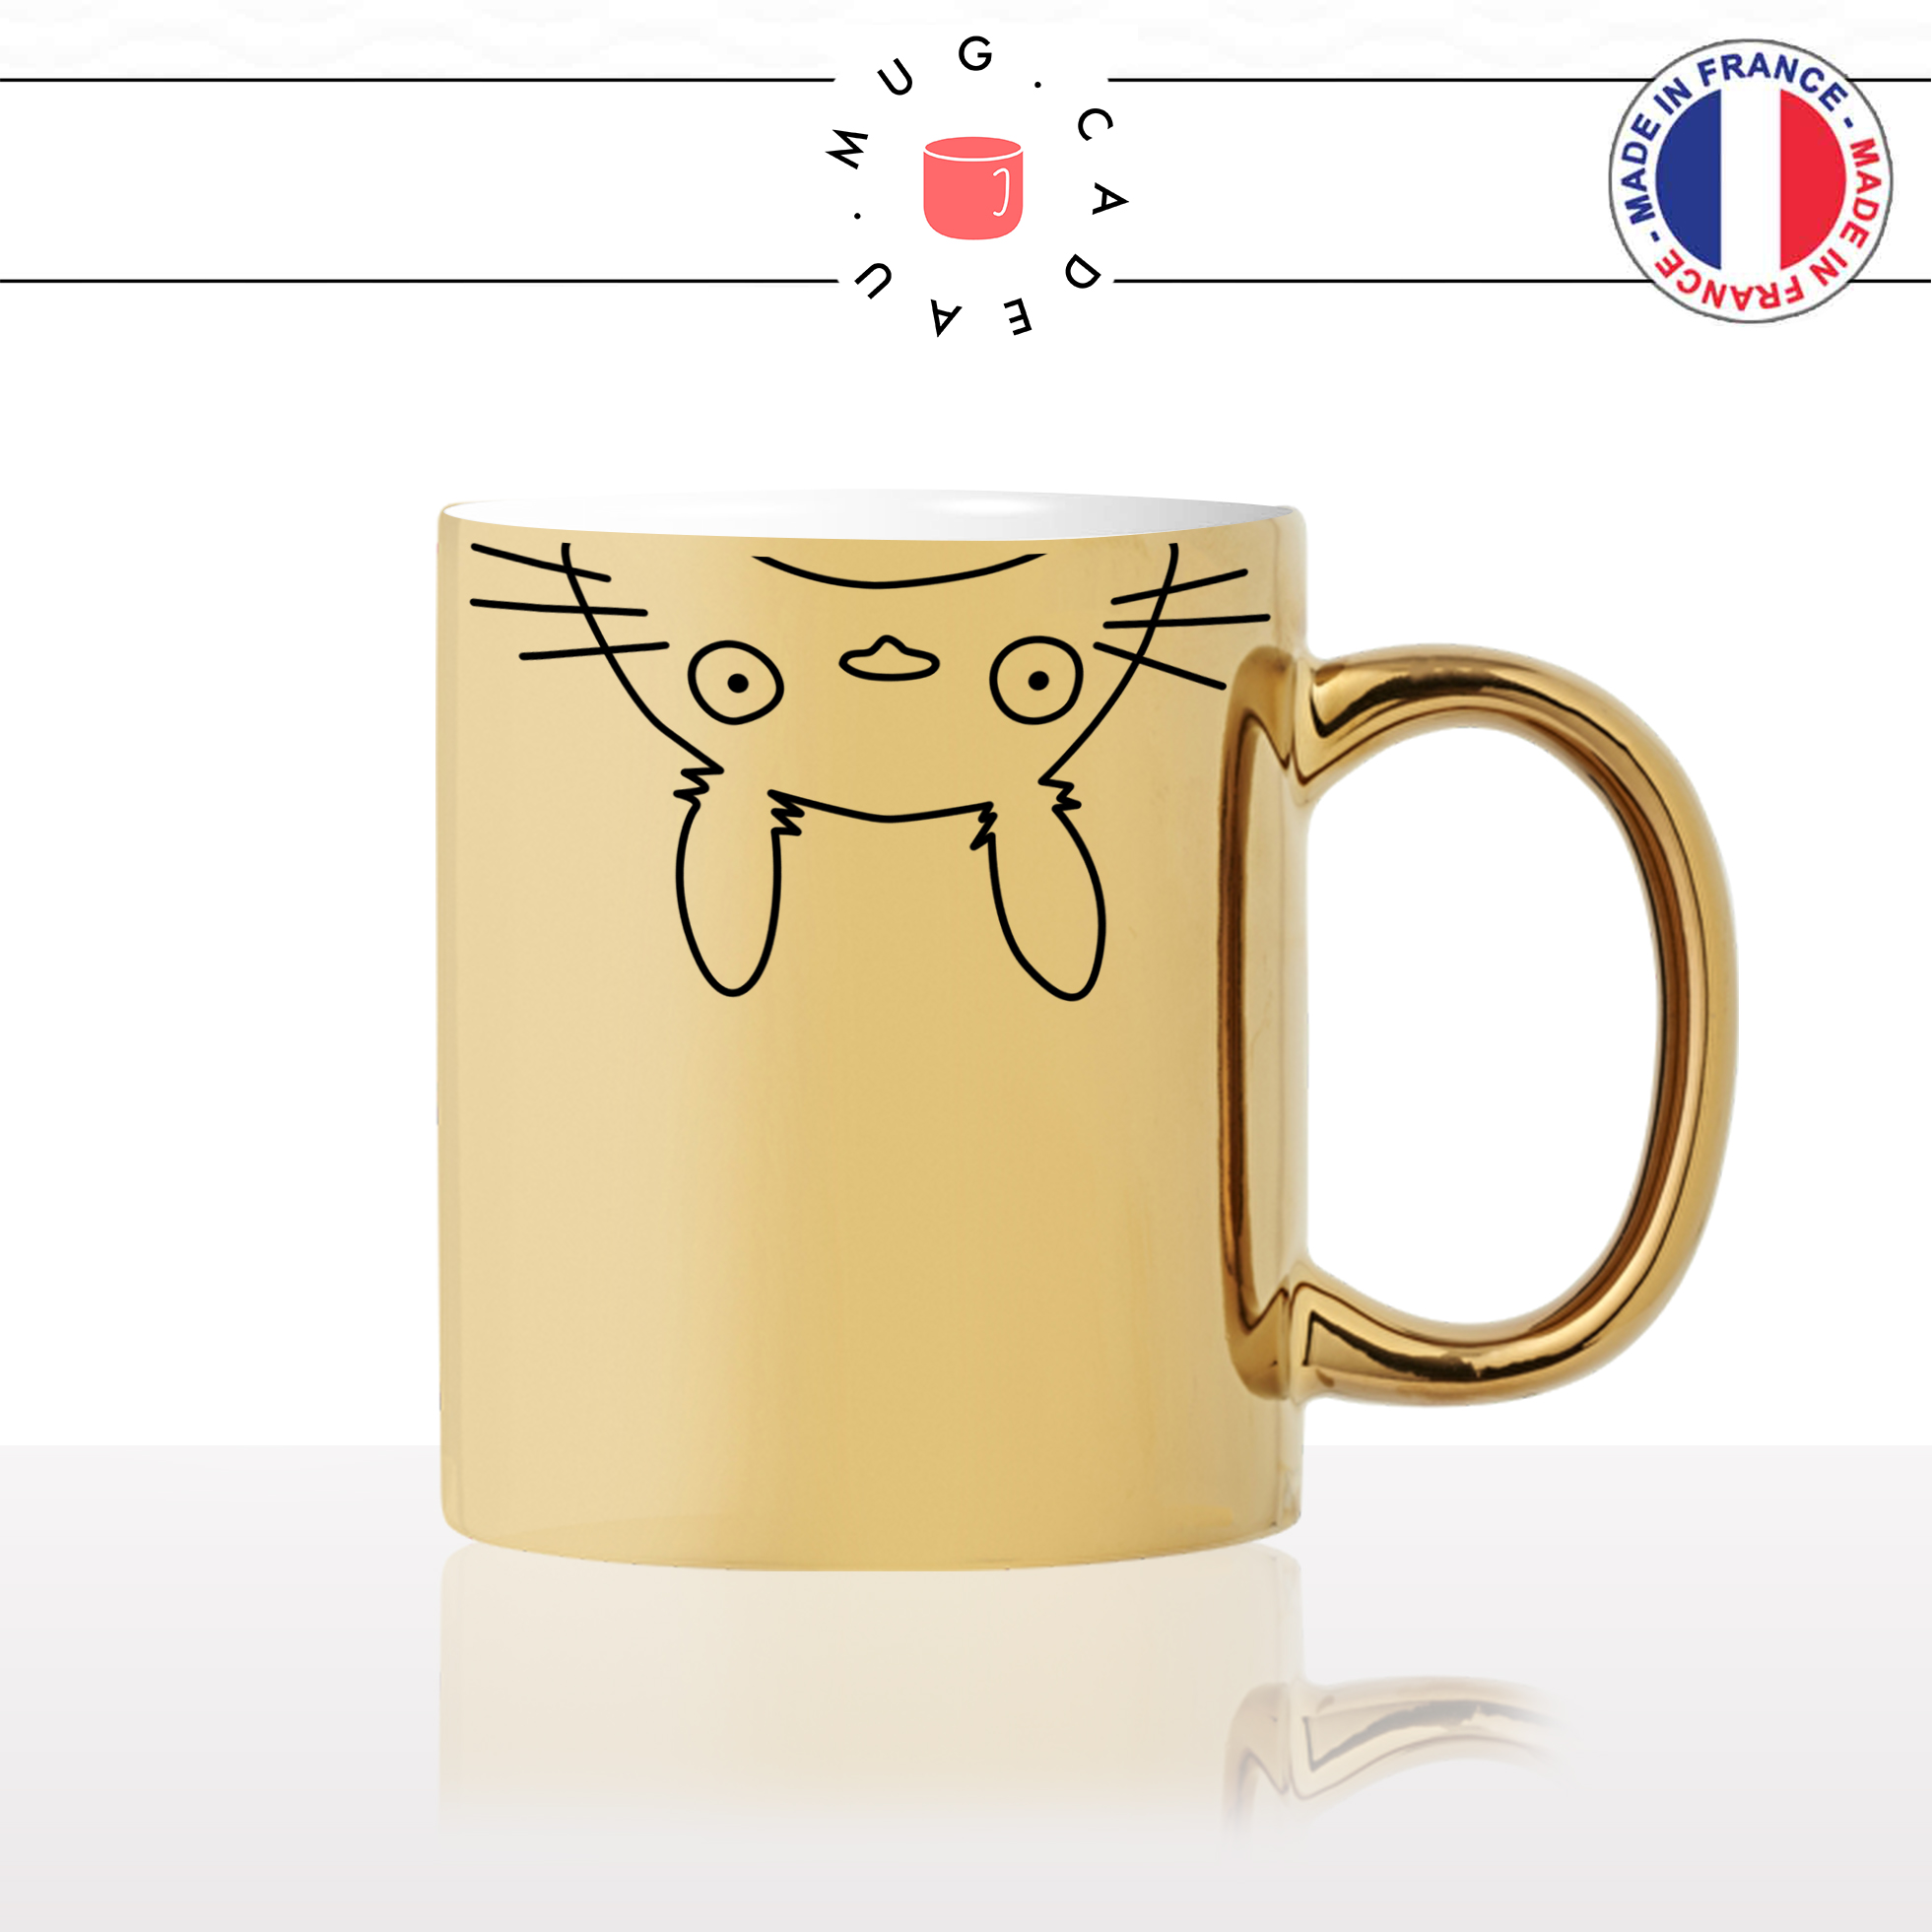 mug-tasse-doré-or-gold-totoro-japonais-mon-ami-travail-collegue-copine-dessin-animé-humour-fun-idée-cadeau-personnalisé-café-thé2-min